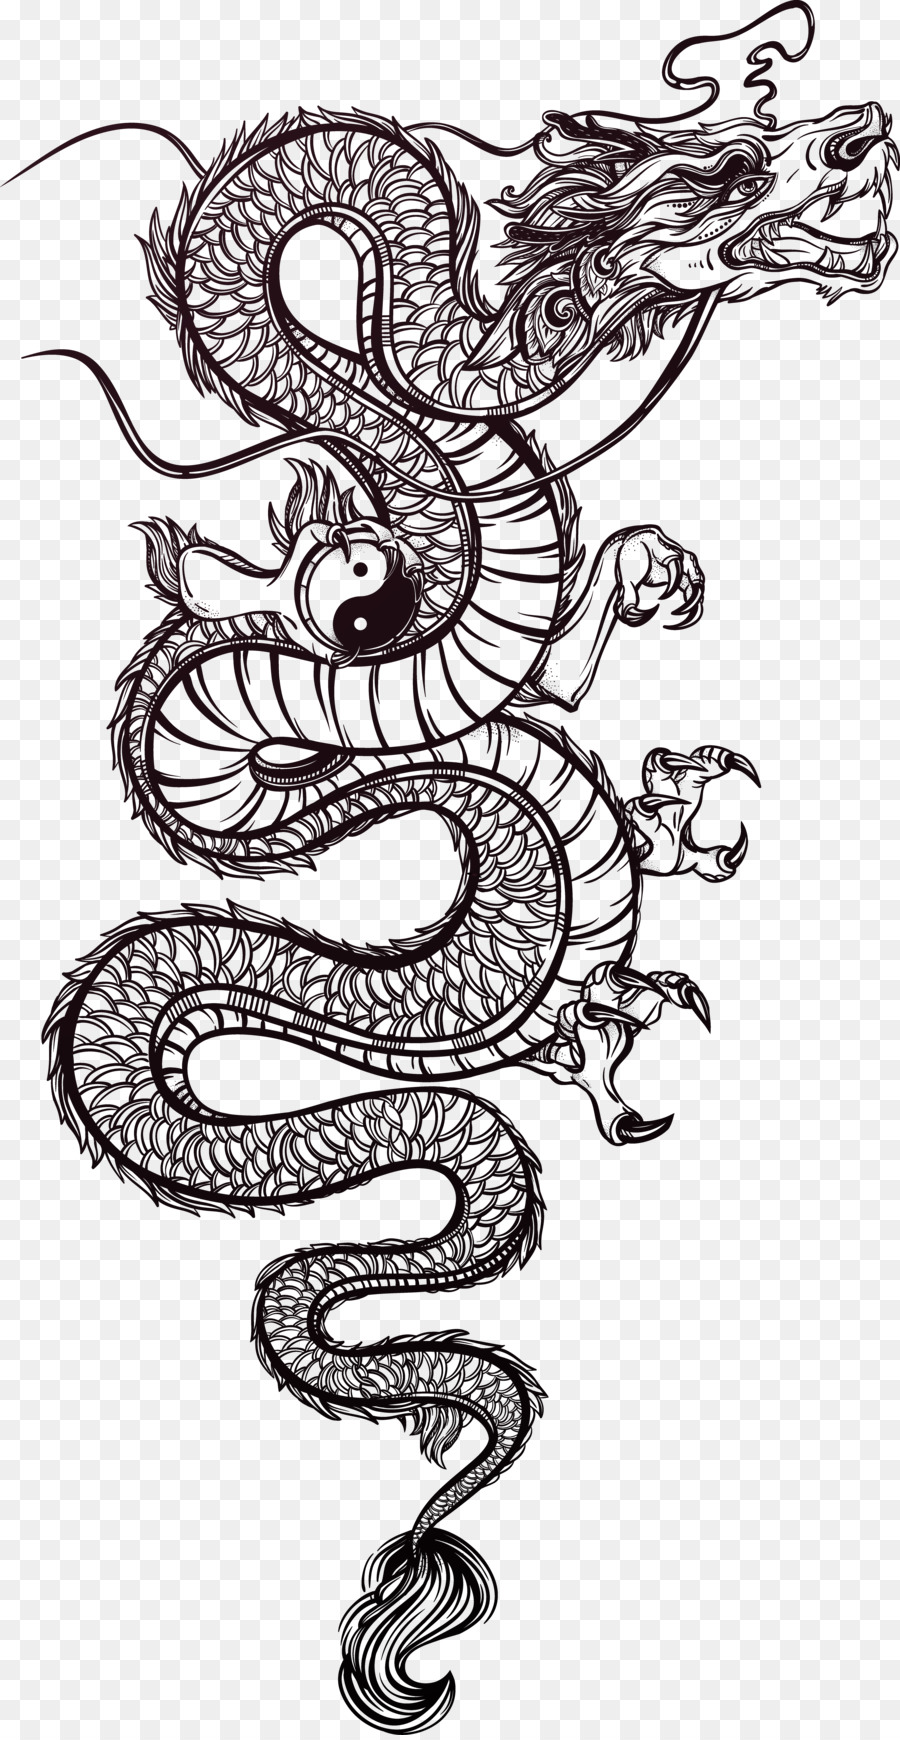 Cina Naga Tato Ilustrasi Tangan Dicat Naga Vektor Unduh Reptil